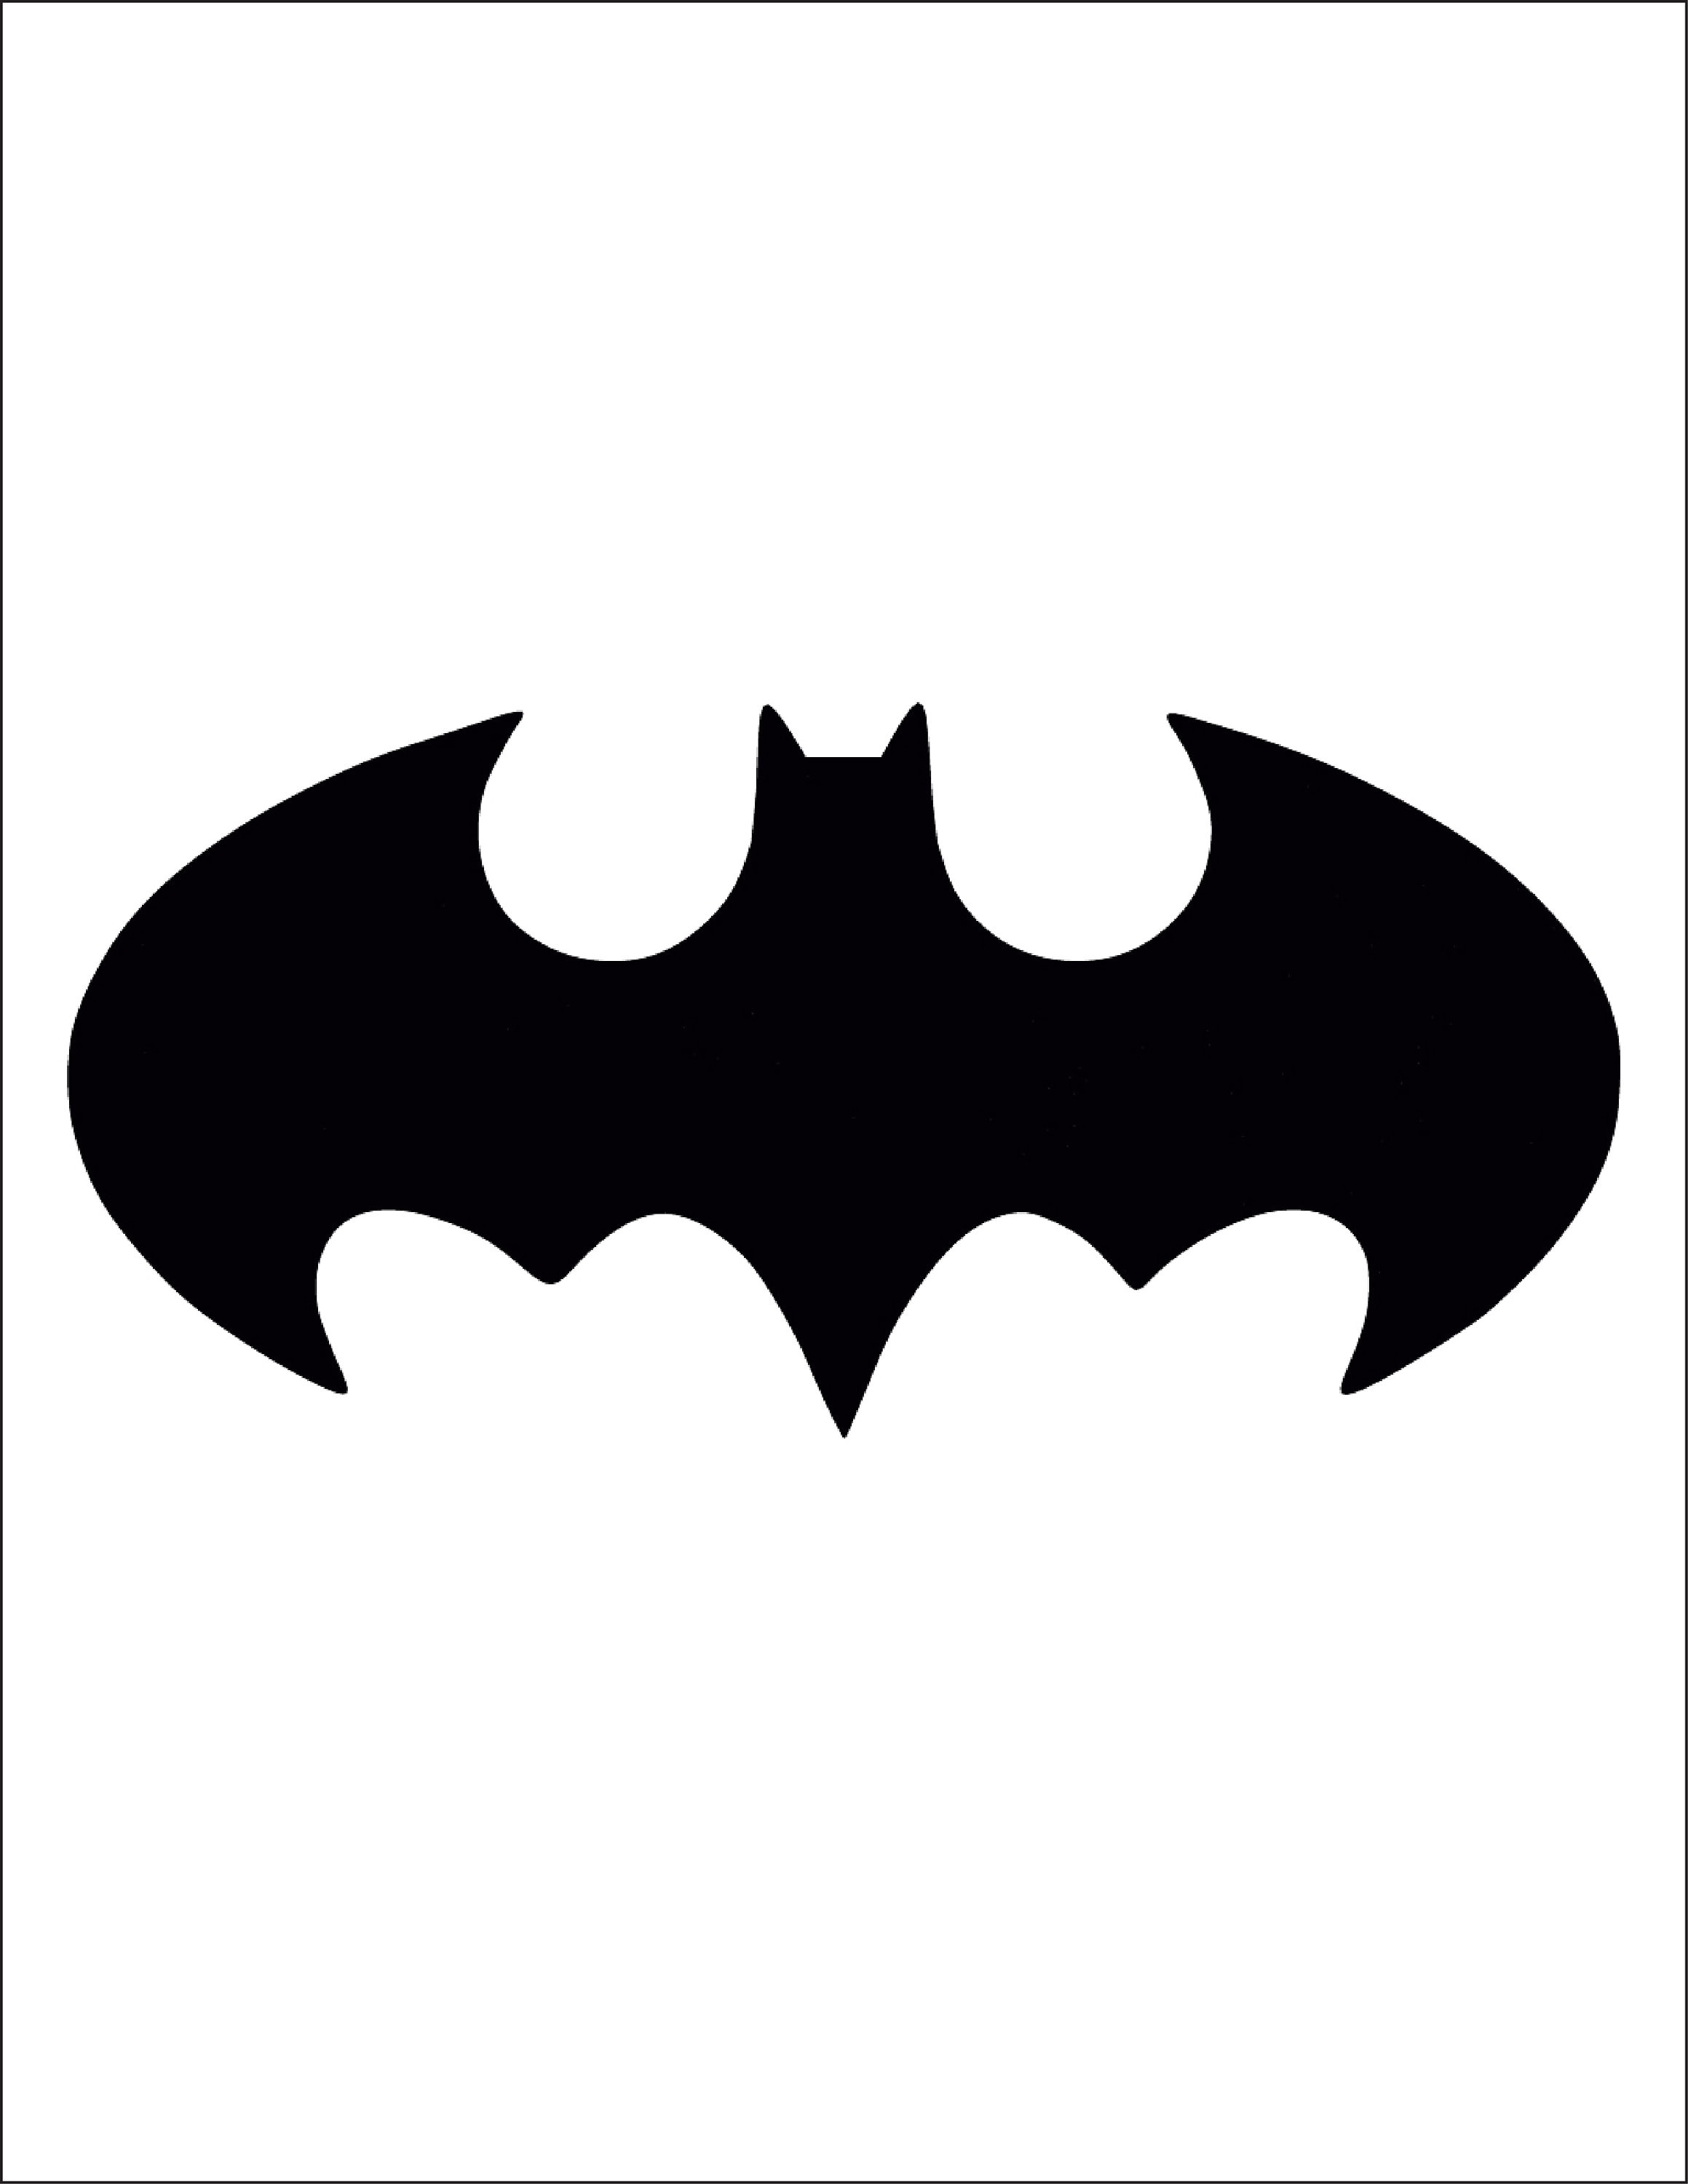 Batman Bat Symbol 1 inch 3 inch 5 inch Logo Vinyl Decal